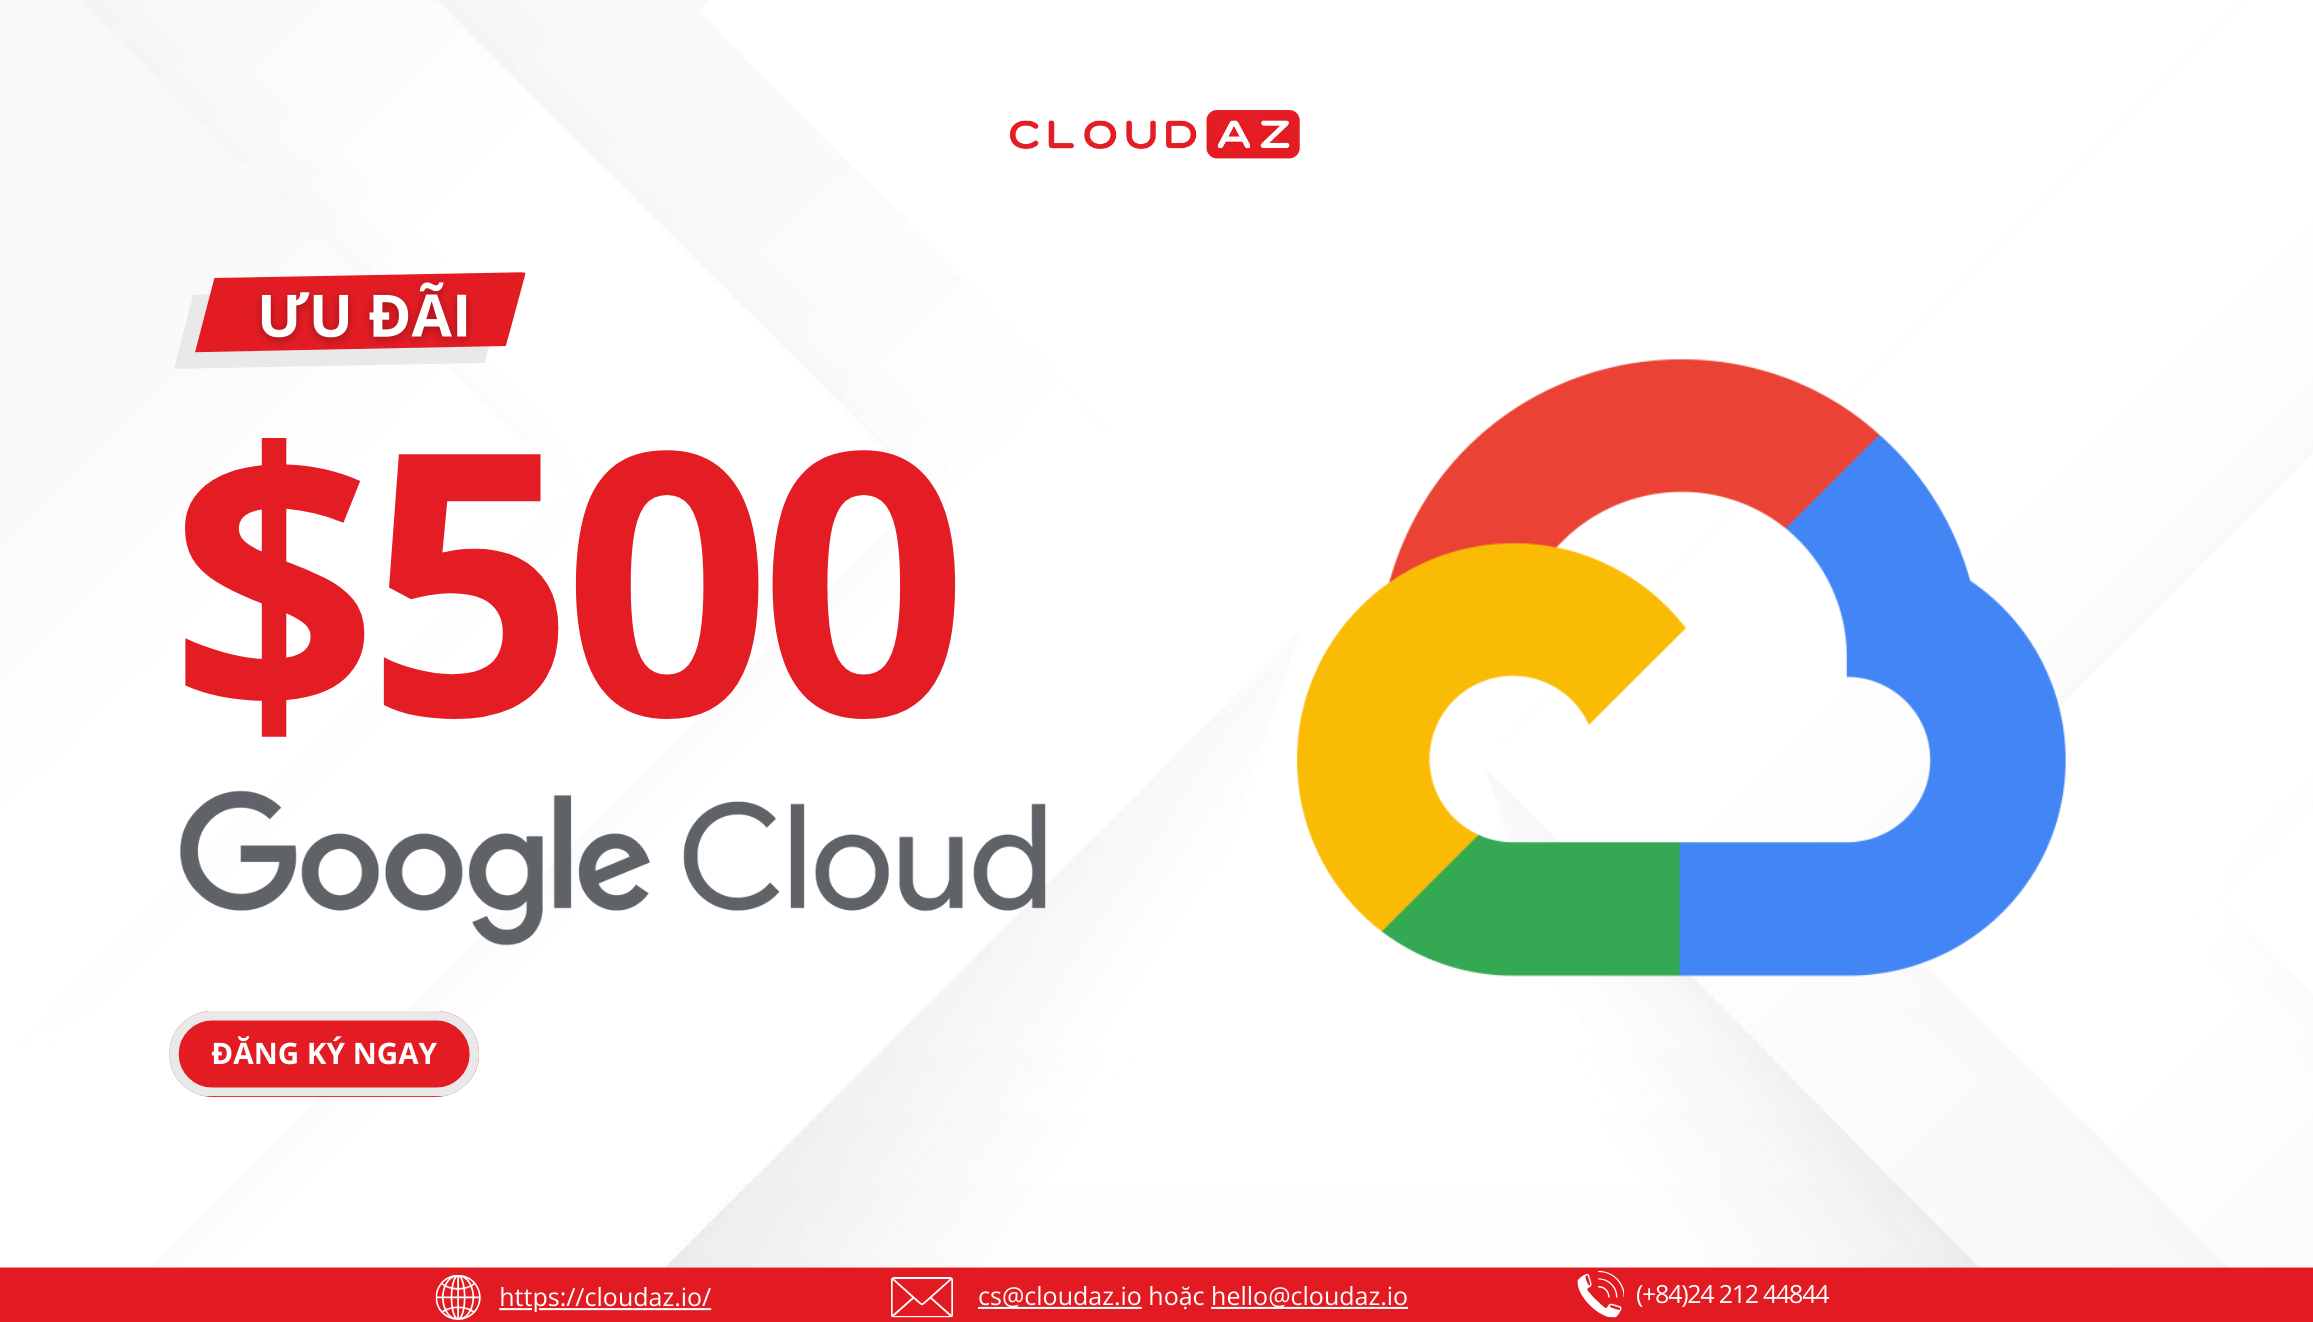 Google Cloud Platform Điện toán đám mây Chuyển đổi số doanh nghiệp Credit GCP Hỗ trợ kỹ thuật miễn phí CloudAZ 5 năm CloudAZ Đối tác Google Cloud Hạ tầng công nghệ Ưu đãi Google Workspace Đánh giá Google Cloud Tri ân khách hàng Giải pháp chuyển đổi số Kỹ thuật chuyên nghiệp Dịch vụ điện toán đám mây.